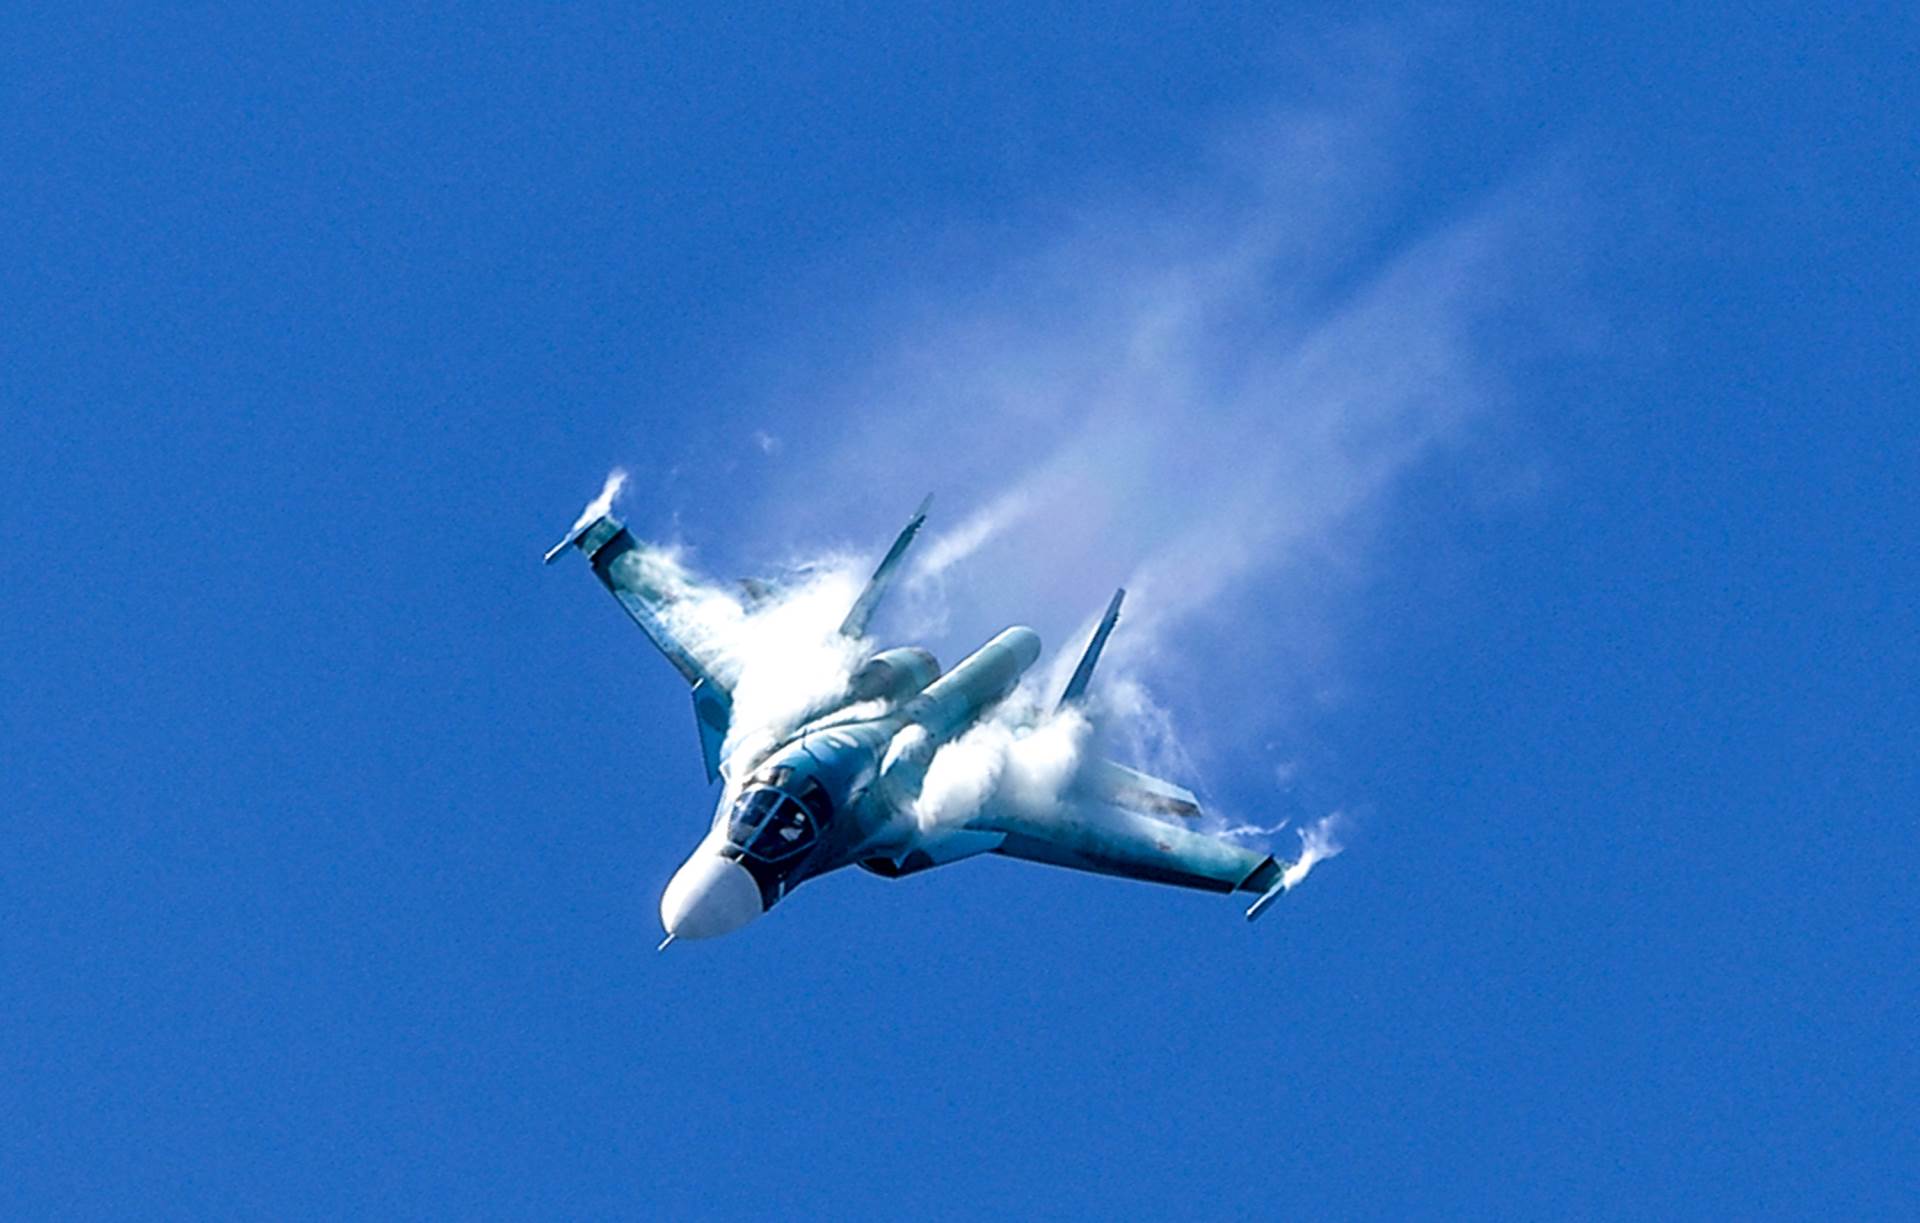  Putinovi bombarderi provocirali, a NATO odmah digao ratne avione 